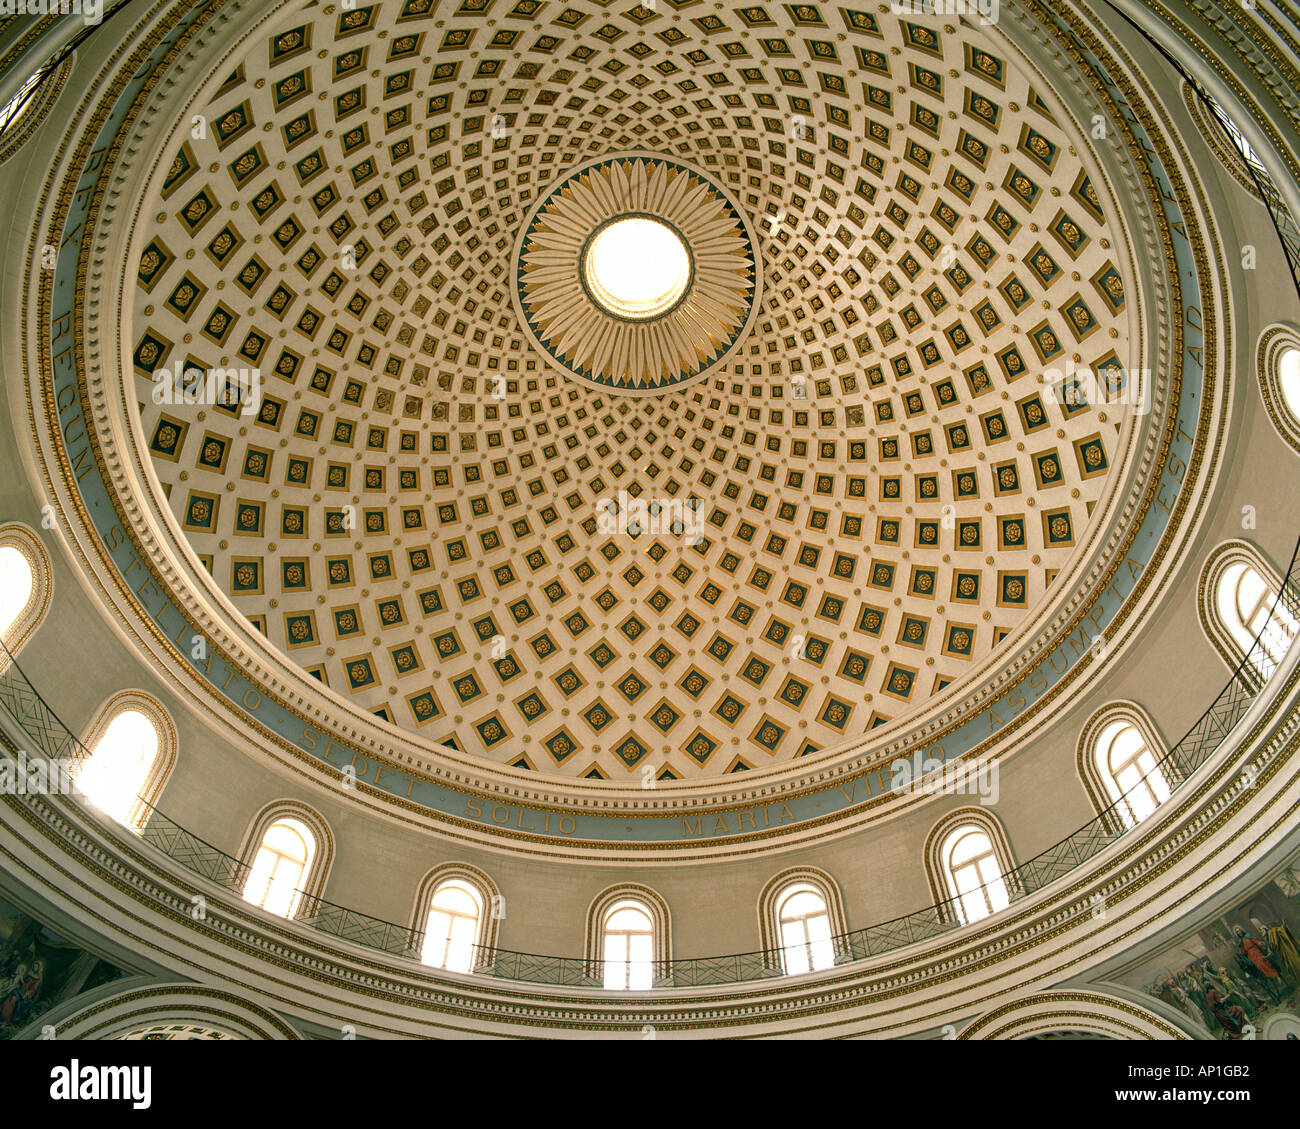 MT - MOSTA: Cattedrale interno Foto Stock